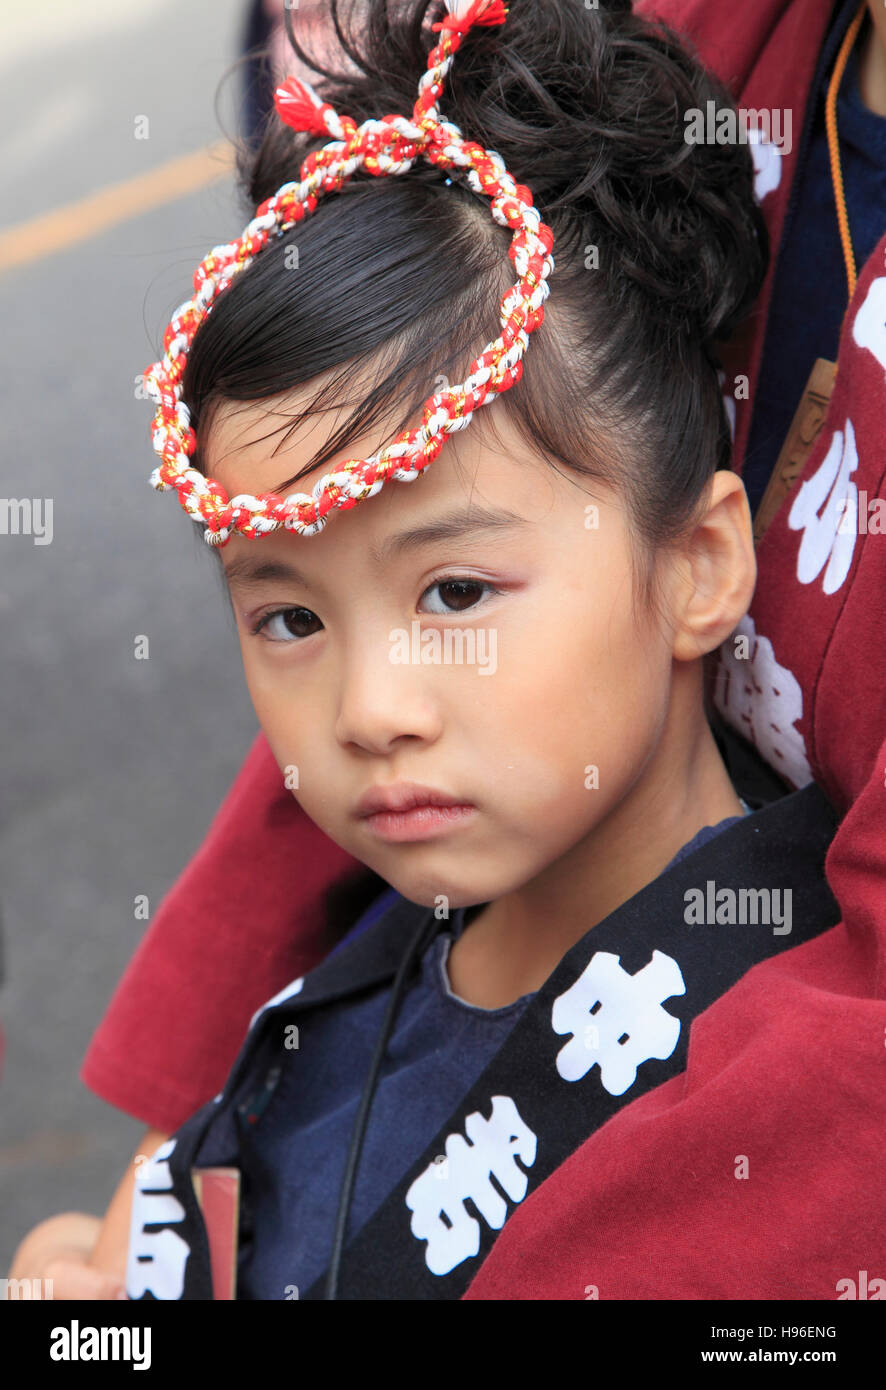 Japan, Sakura City, festival, little girl, portrait, Stock Photo